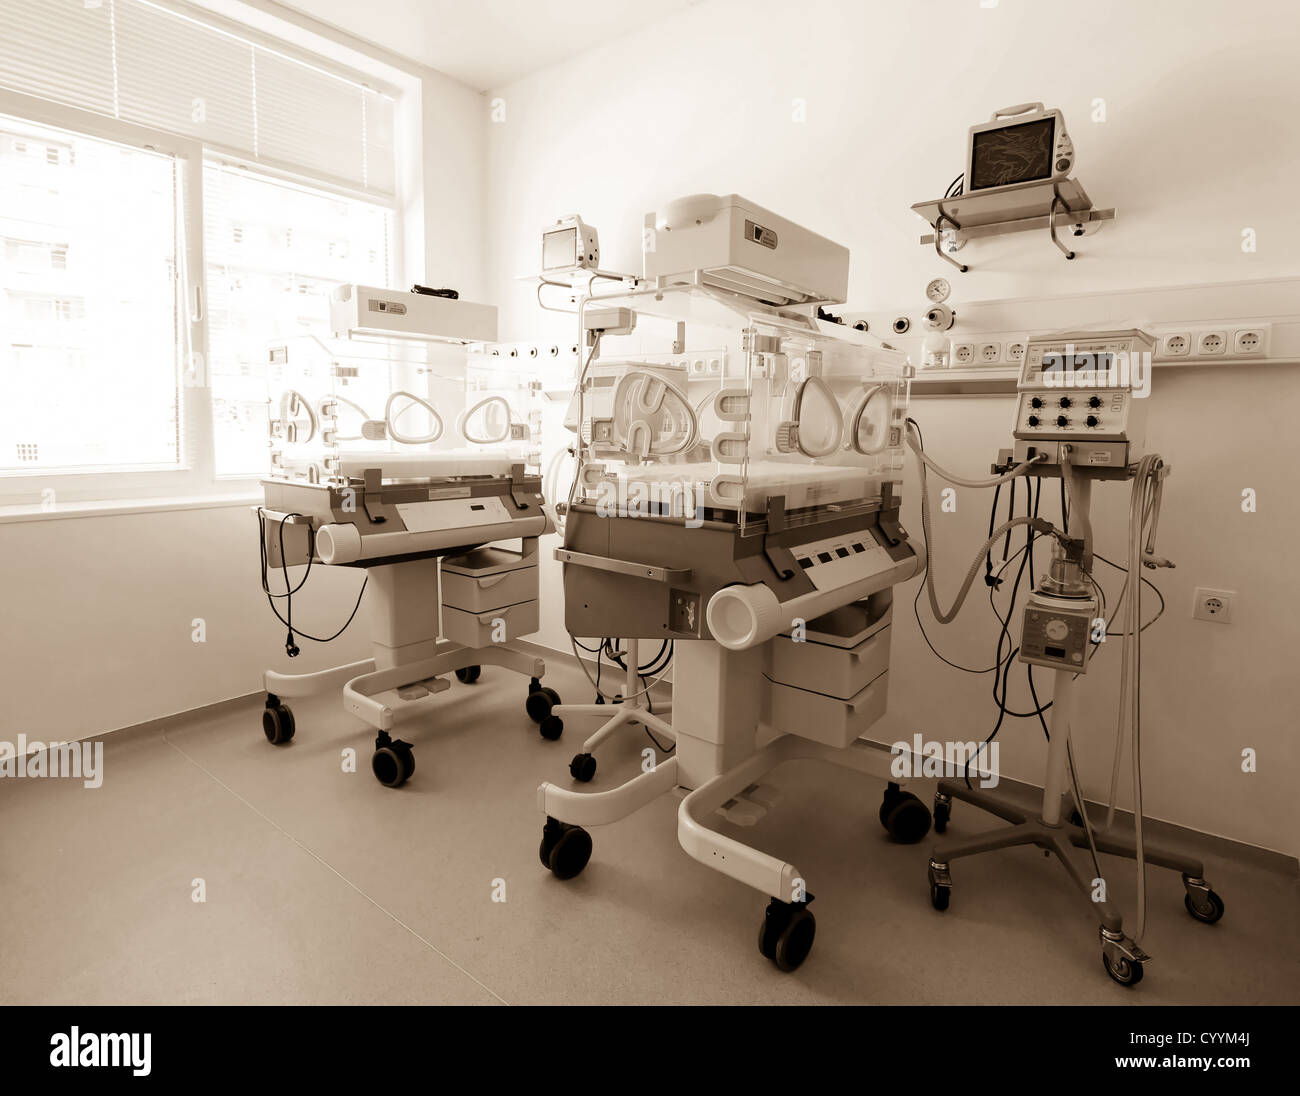 Medizinisch-diagnostische Geräteraum. Therapeutische und diagnostische Zimmer mit medizinischen Geräten. Stockfoto